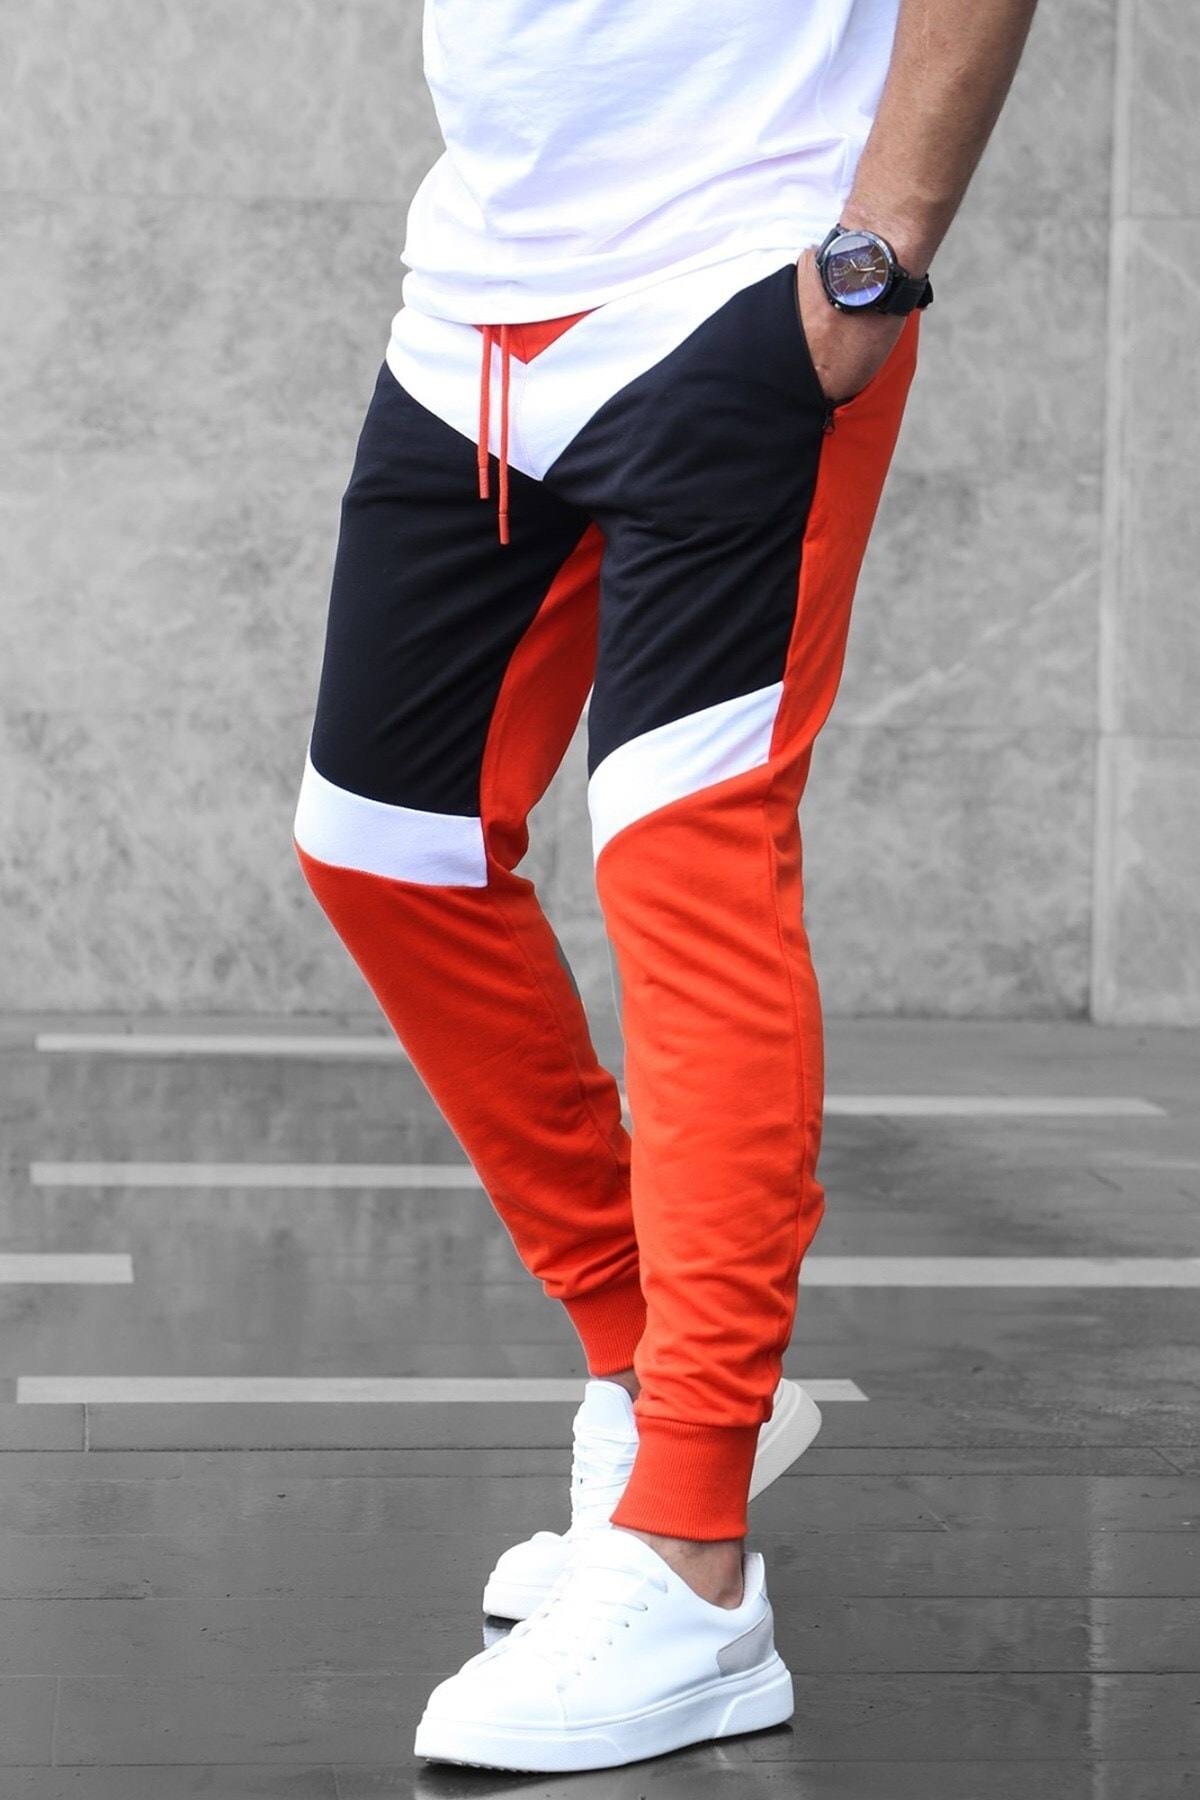 Спортивный костюм Madmext, оранжевый